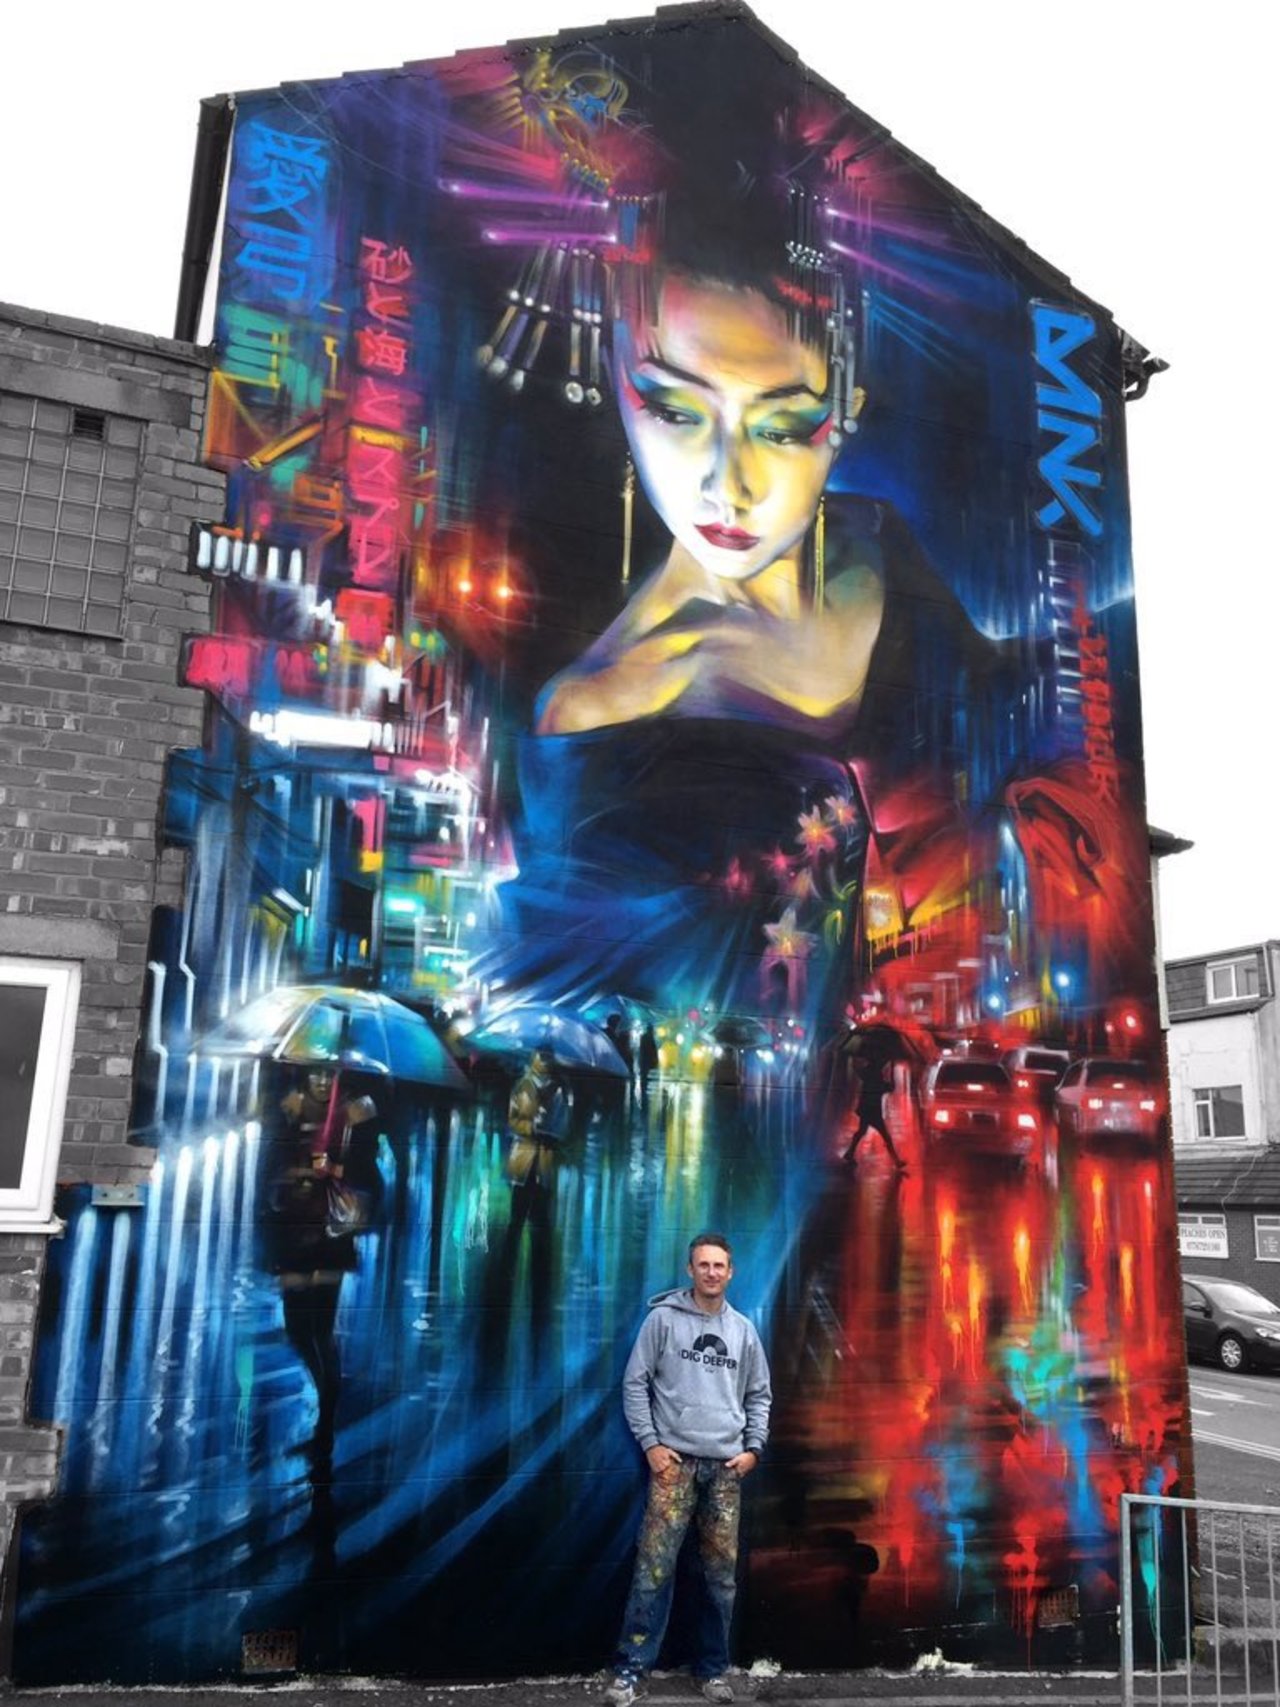 New Street Art by DanKitchener in Blackpool UK for the Sand Sea & Spray festival#art #mural #graffiti #streetart https://t.co/OKWwuUJ8ha